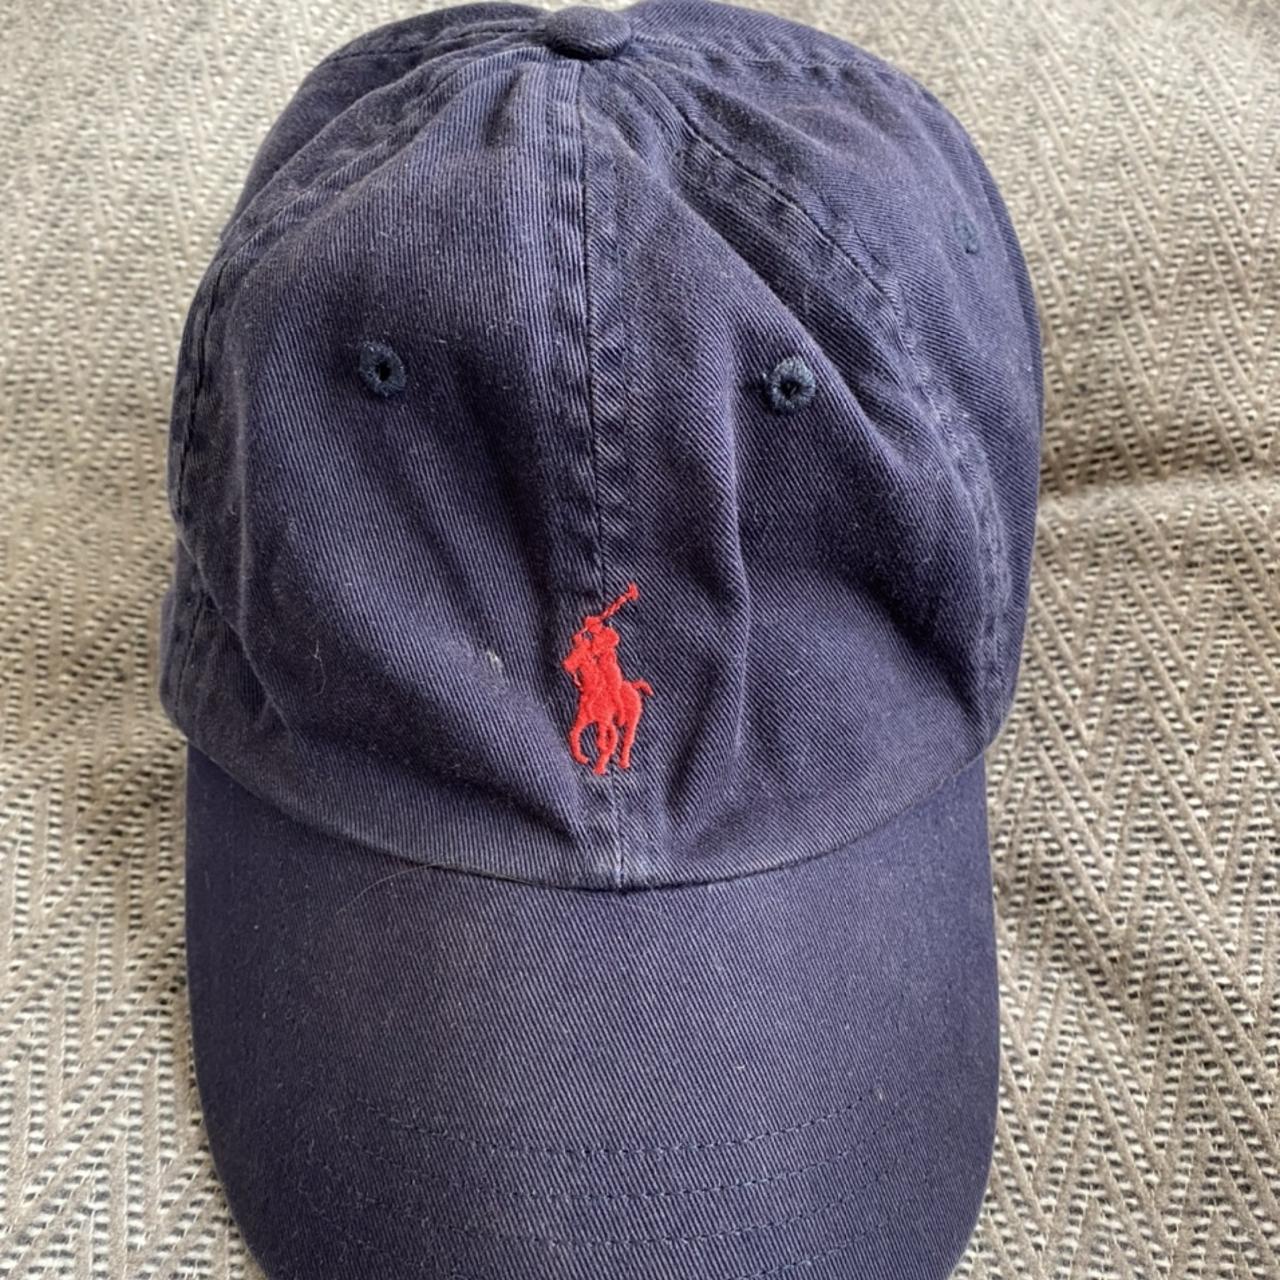 Navy Ralph Lauren cap - Perfect condition - HMU with... - Depop